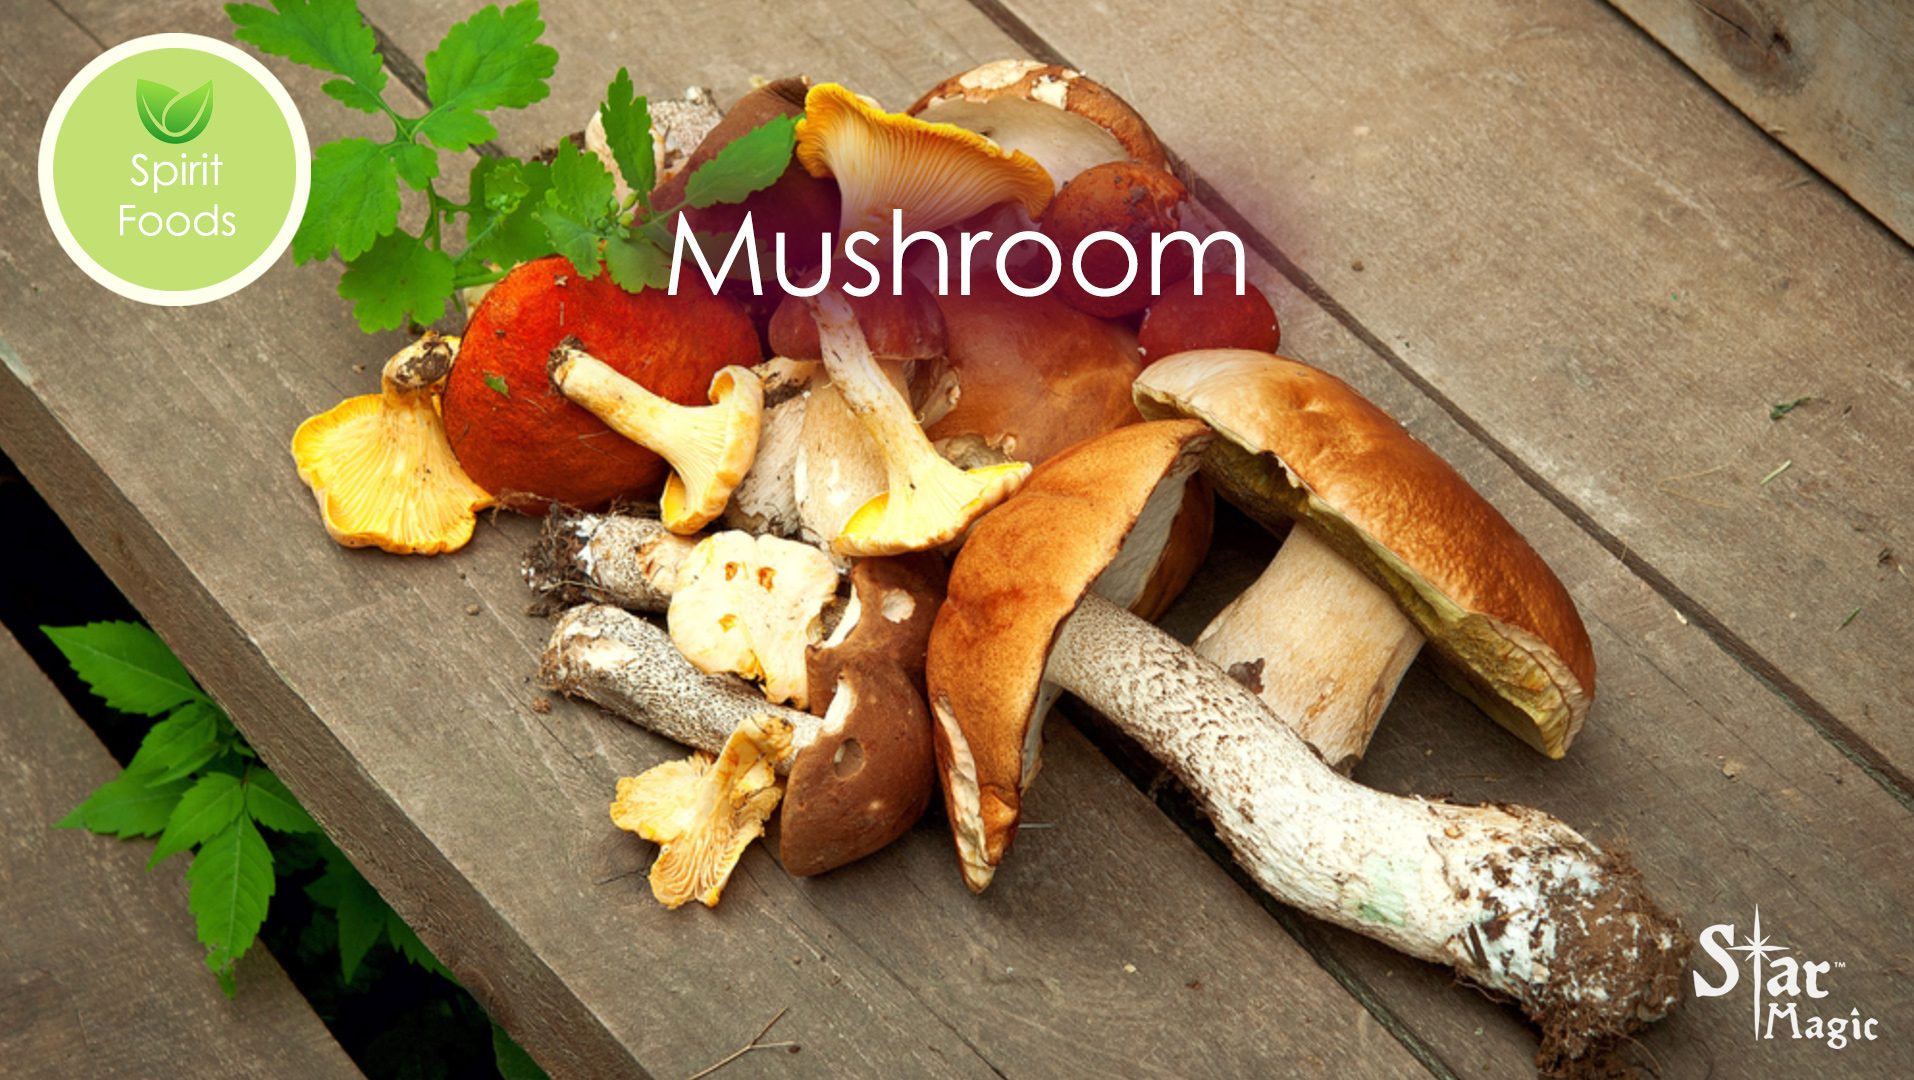 spirit food mushroom